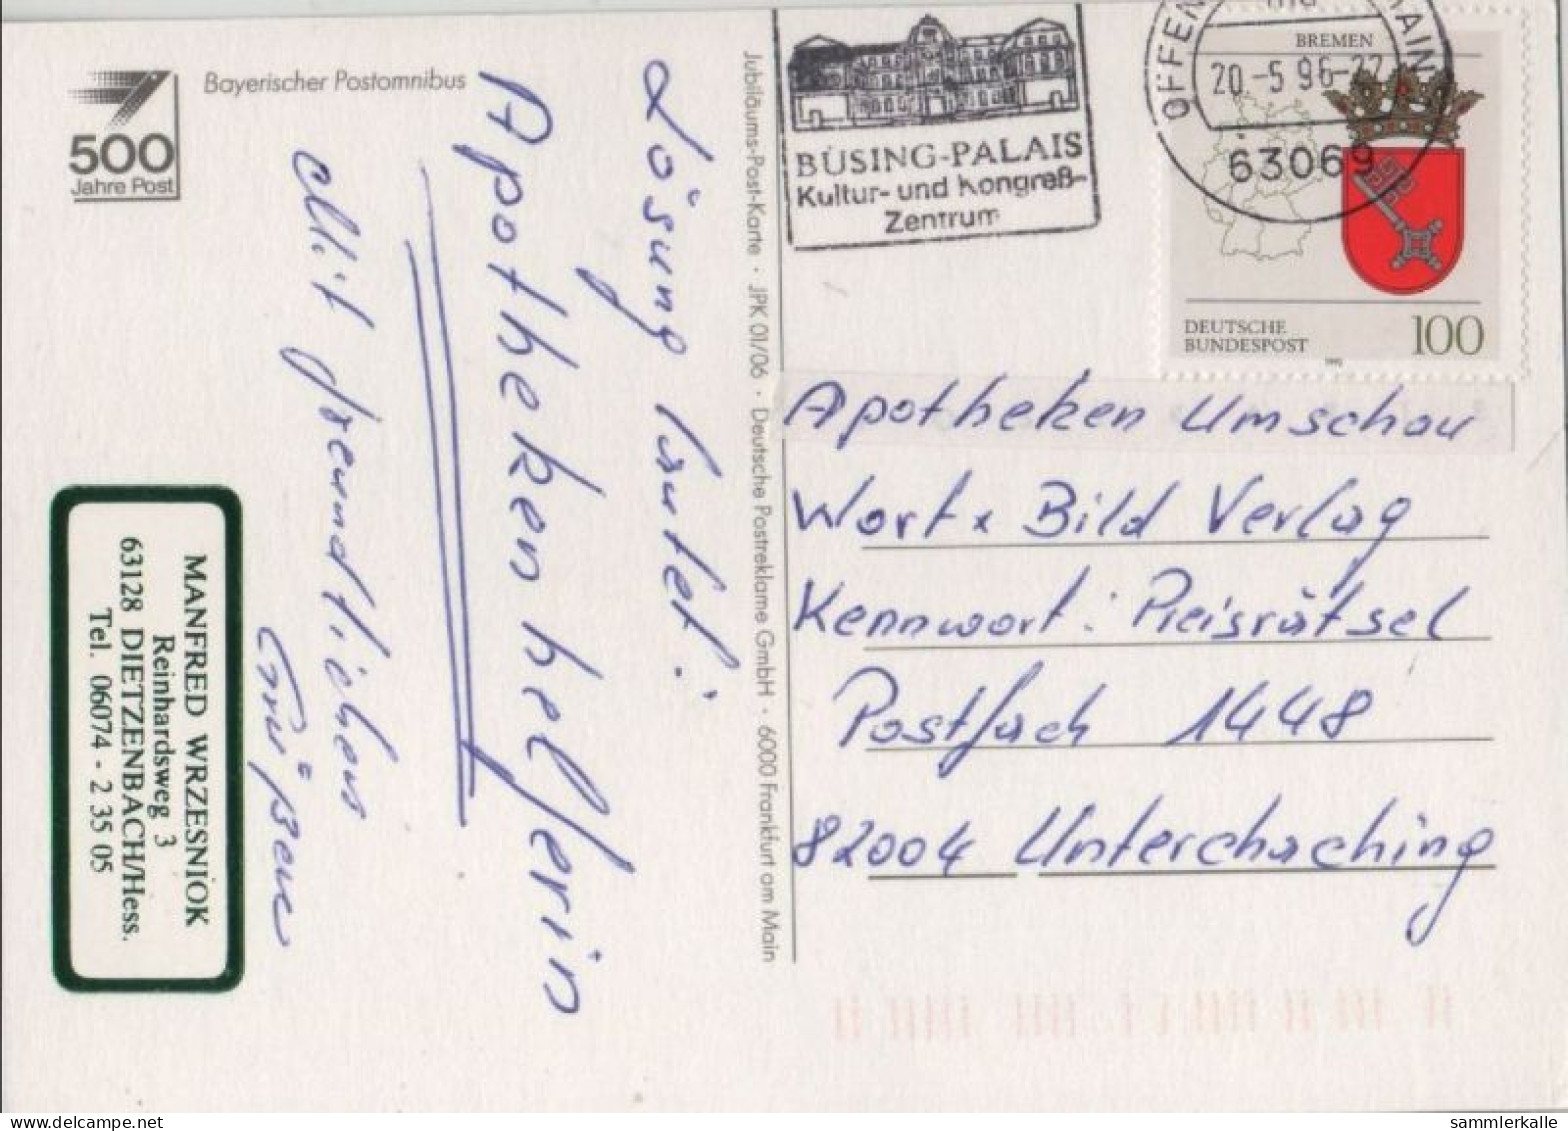 117251 - Postkutsche Peitsche - Postal Services